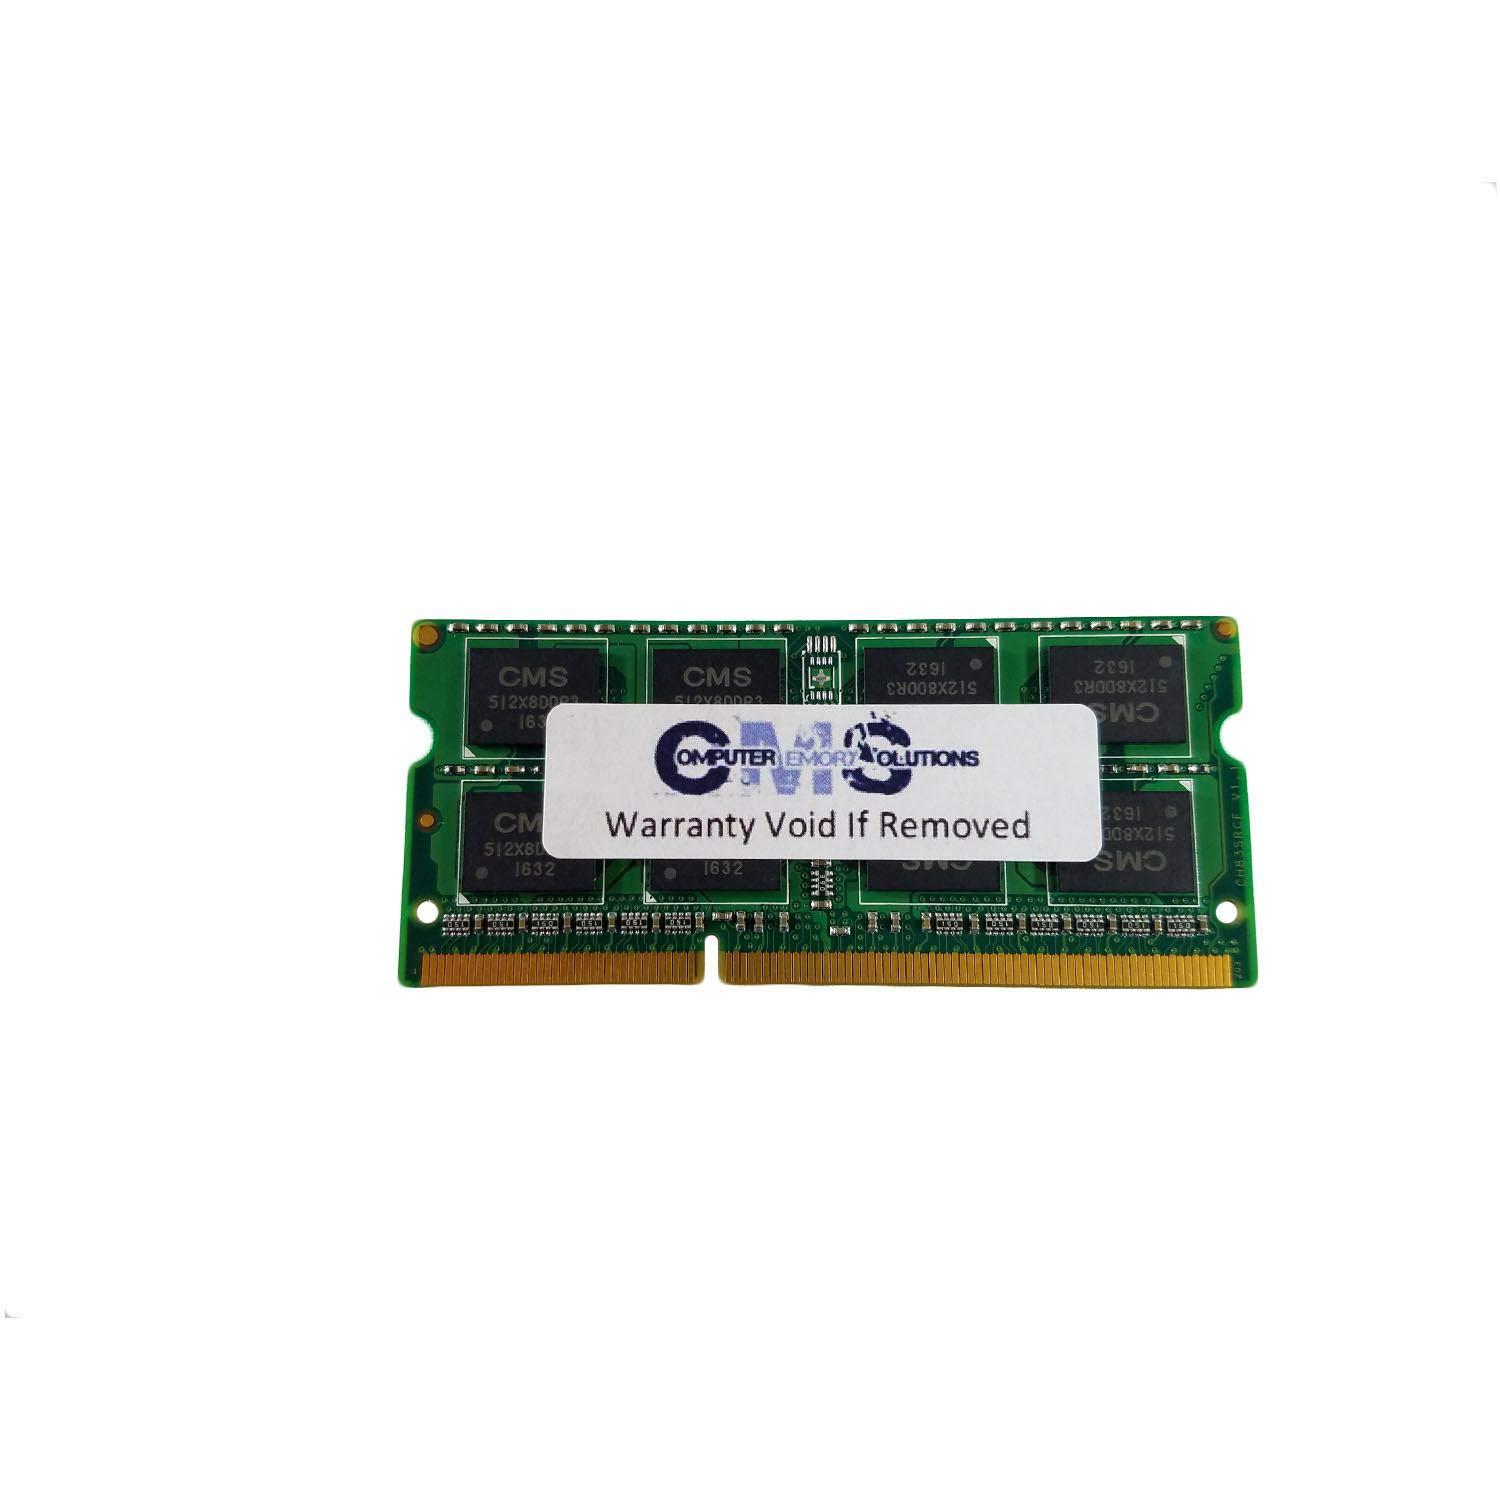 Computer Memory Solutions cms 4gb (1x4gb) ddr3 12800 1600mhz non ecc sodimm memory ram upgrade compatible with acer aspire e1-532-4629, e1-532-4870, e1